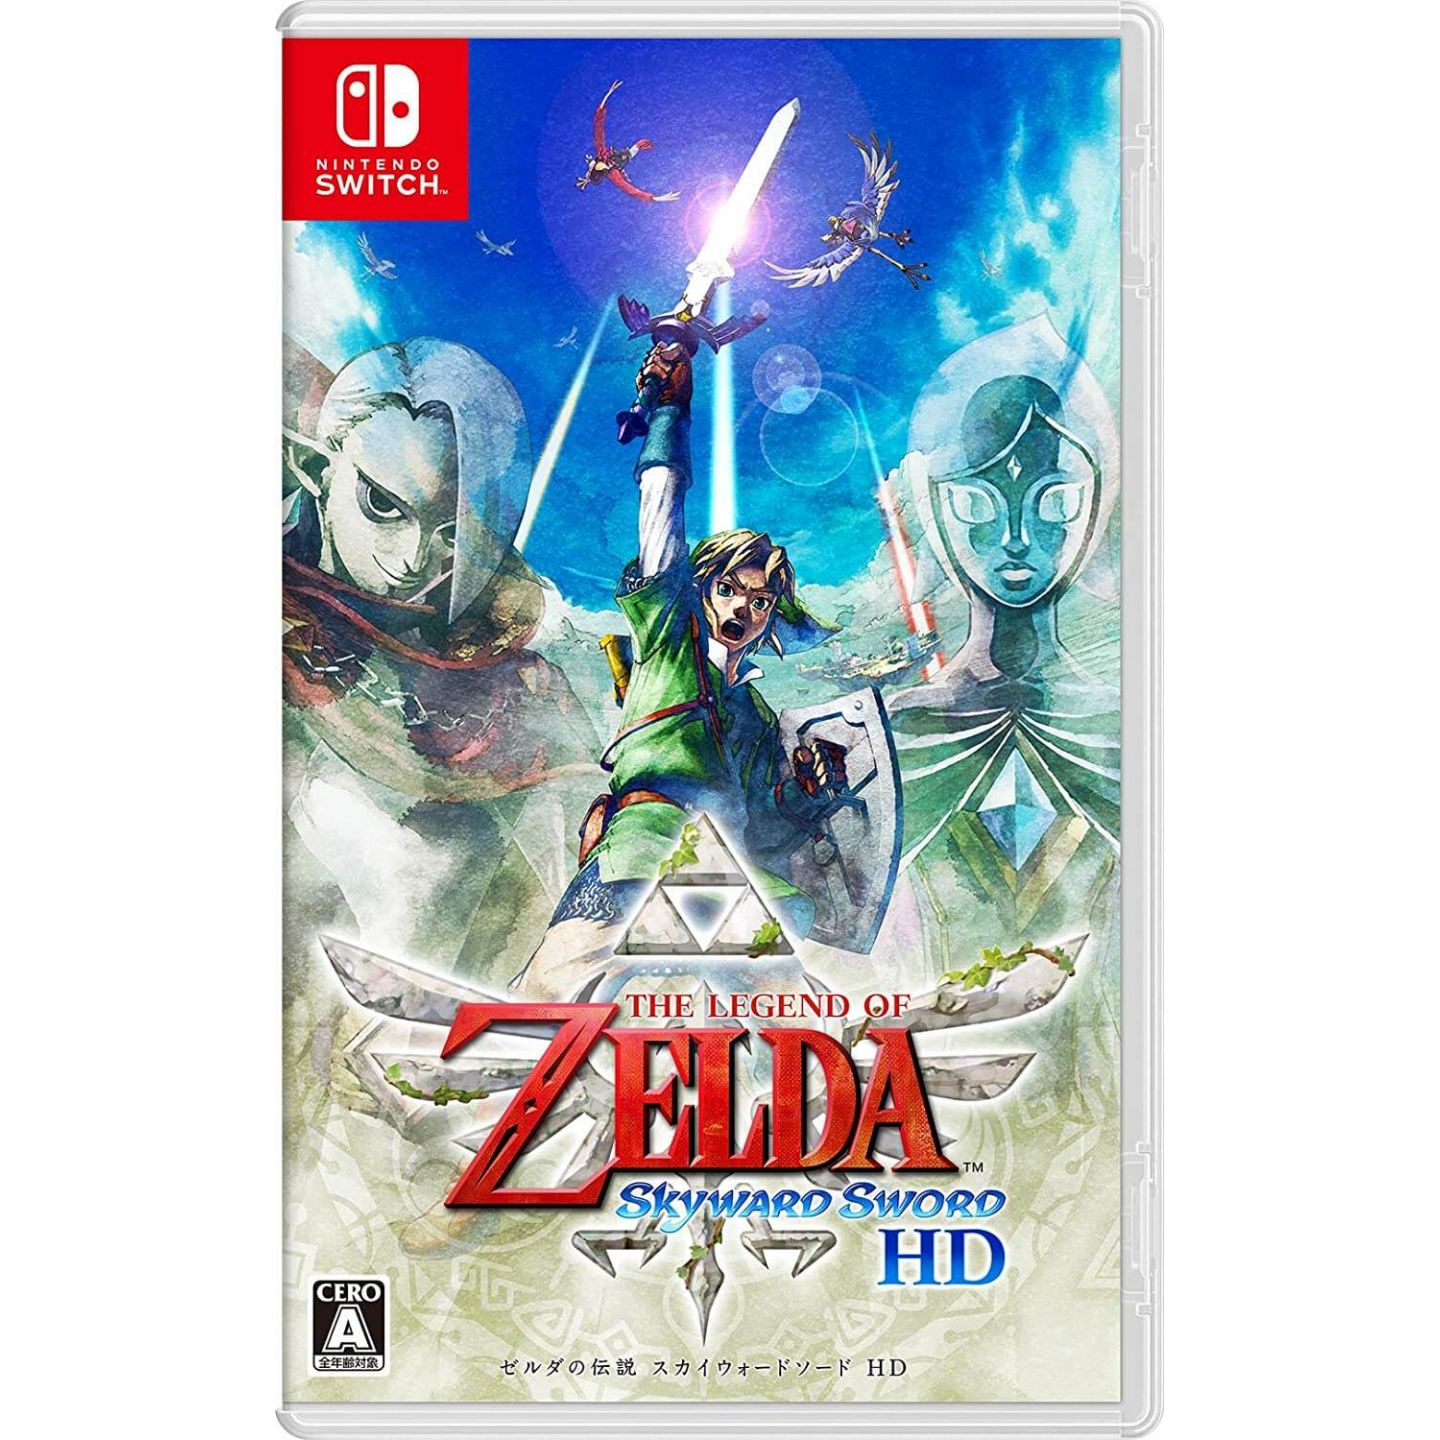 Toy Opening & Review: World of Nintendo Legend of Zelda figures: Wind waker  & Skyward Sword 